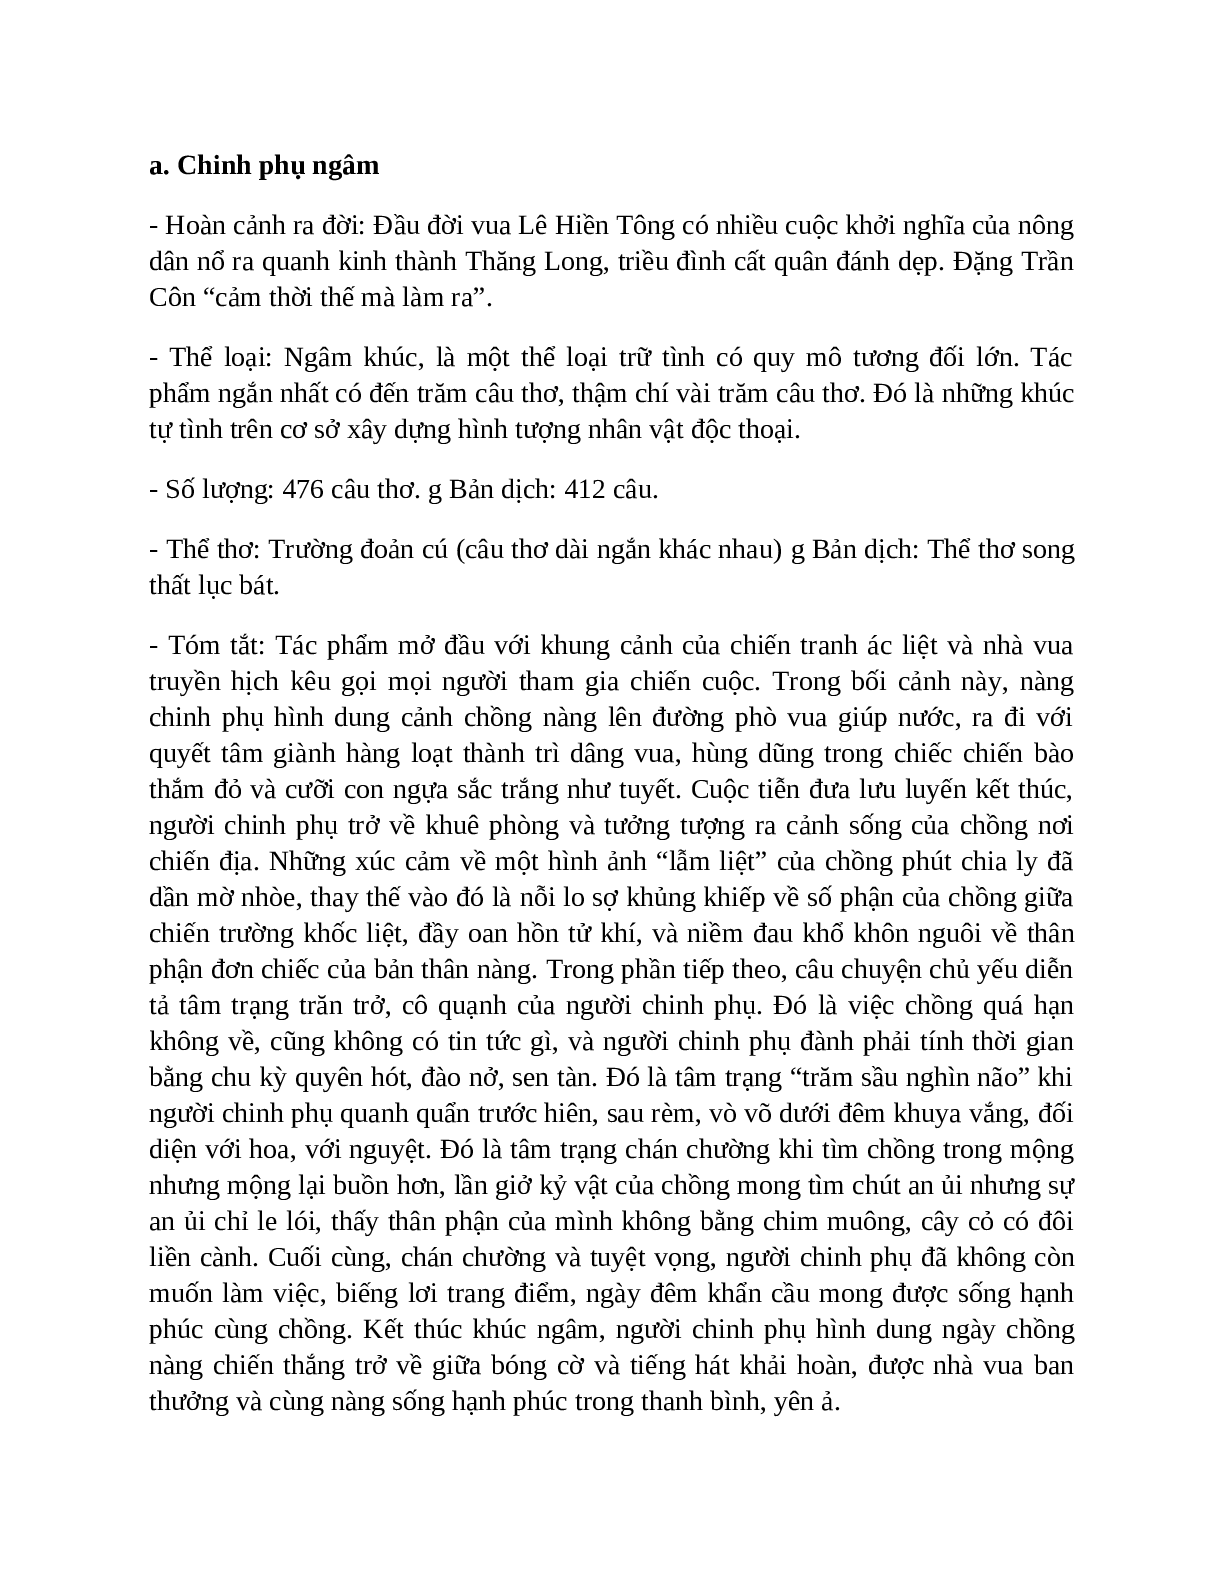 Tình cảnh lẻ loi của người chinh phụ - Tác giả tác phẩm – Ngữ văn lớp 10 (trang 3)